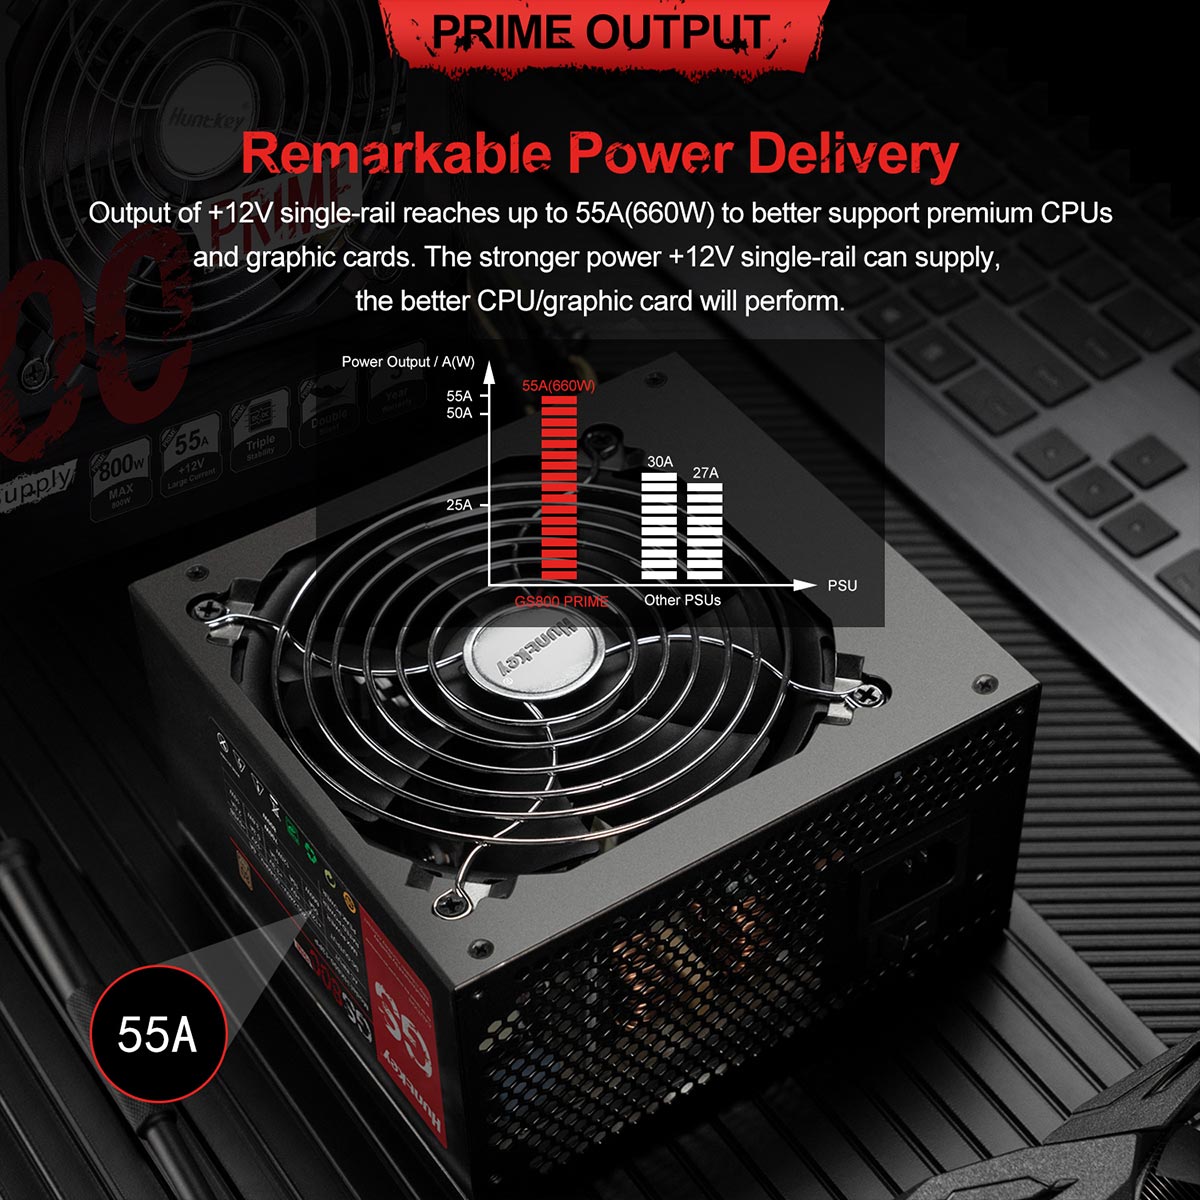 HntKey PC Power Supply PSU, GS800 Prime (800 Watt, Active PFC, 80+ Bronze ) 